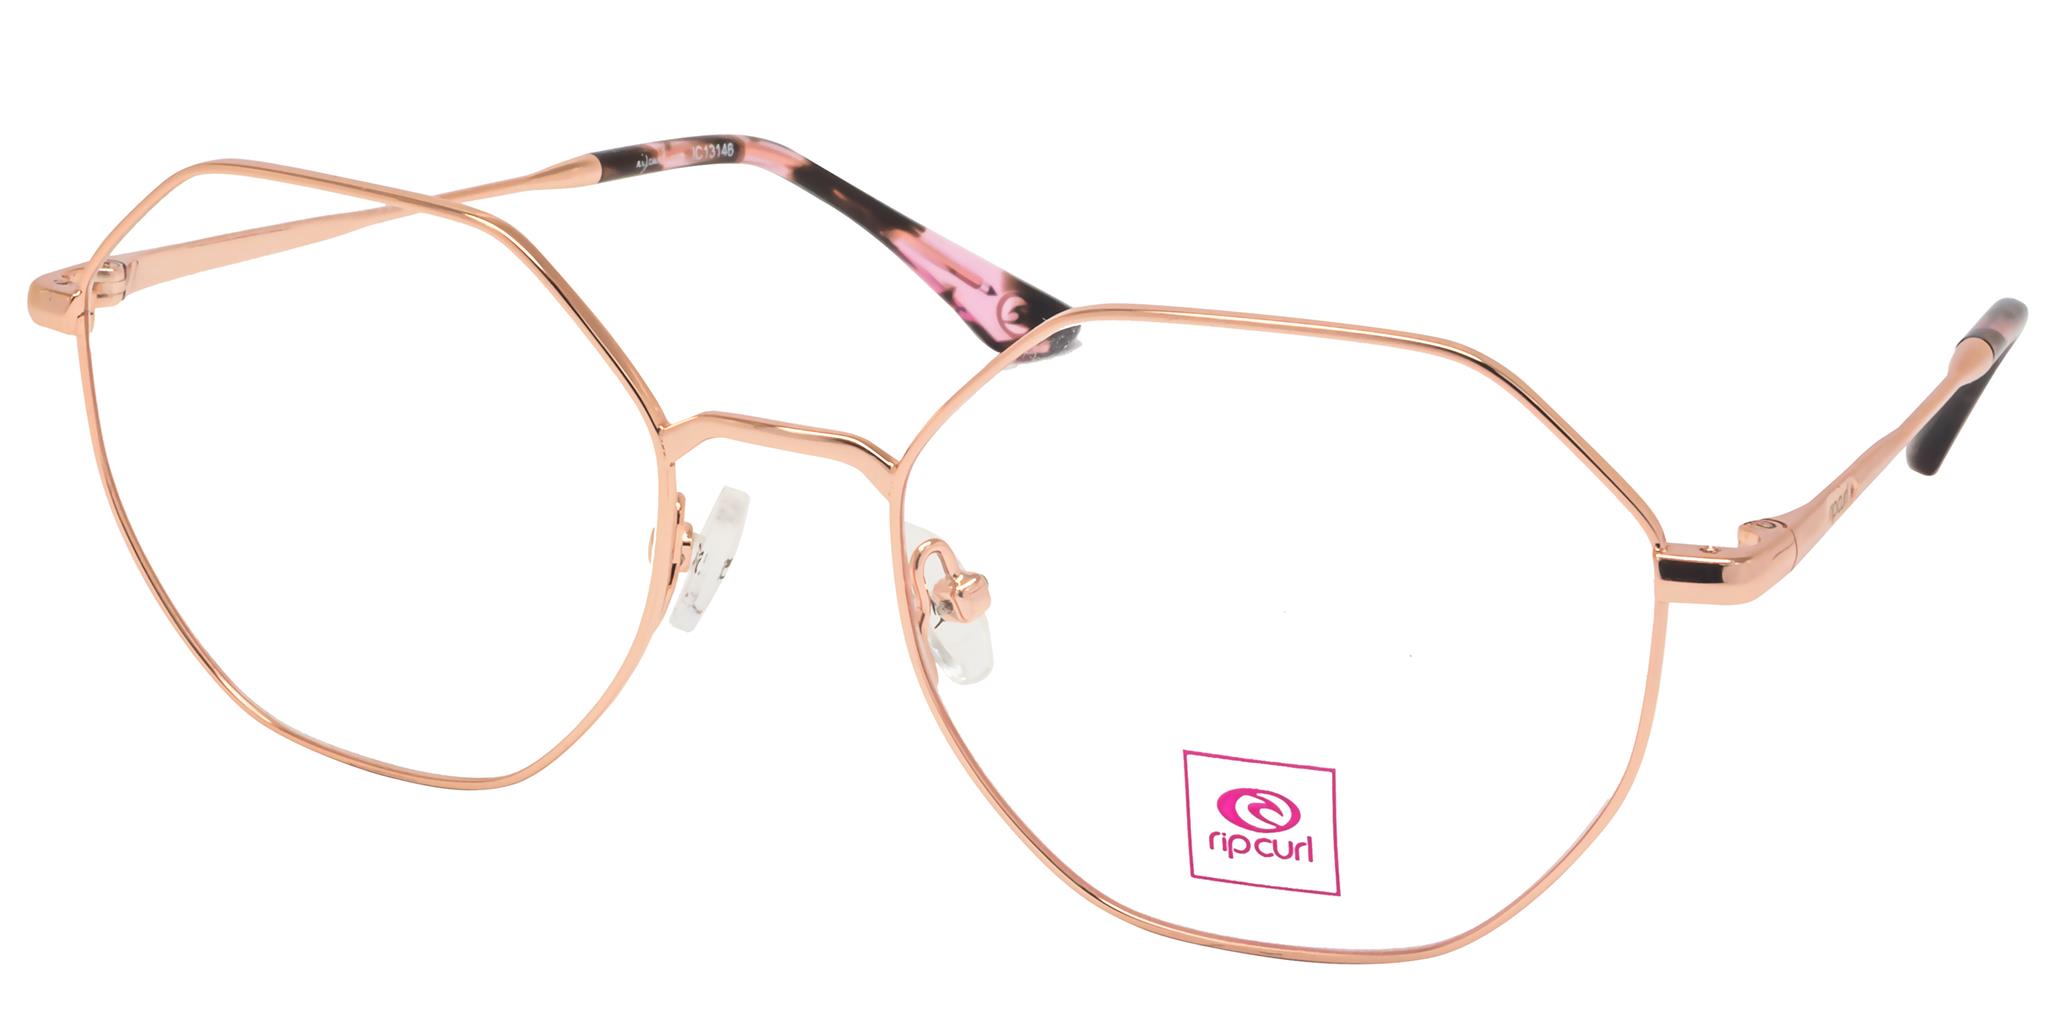 Accessoires lunettes : Cordons, loupes & nettoyants